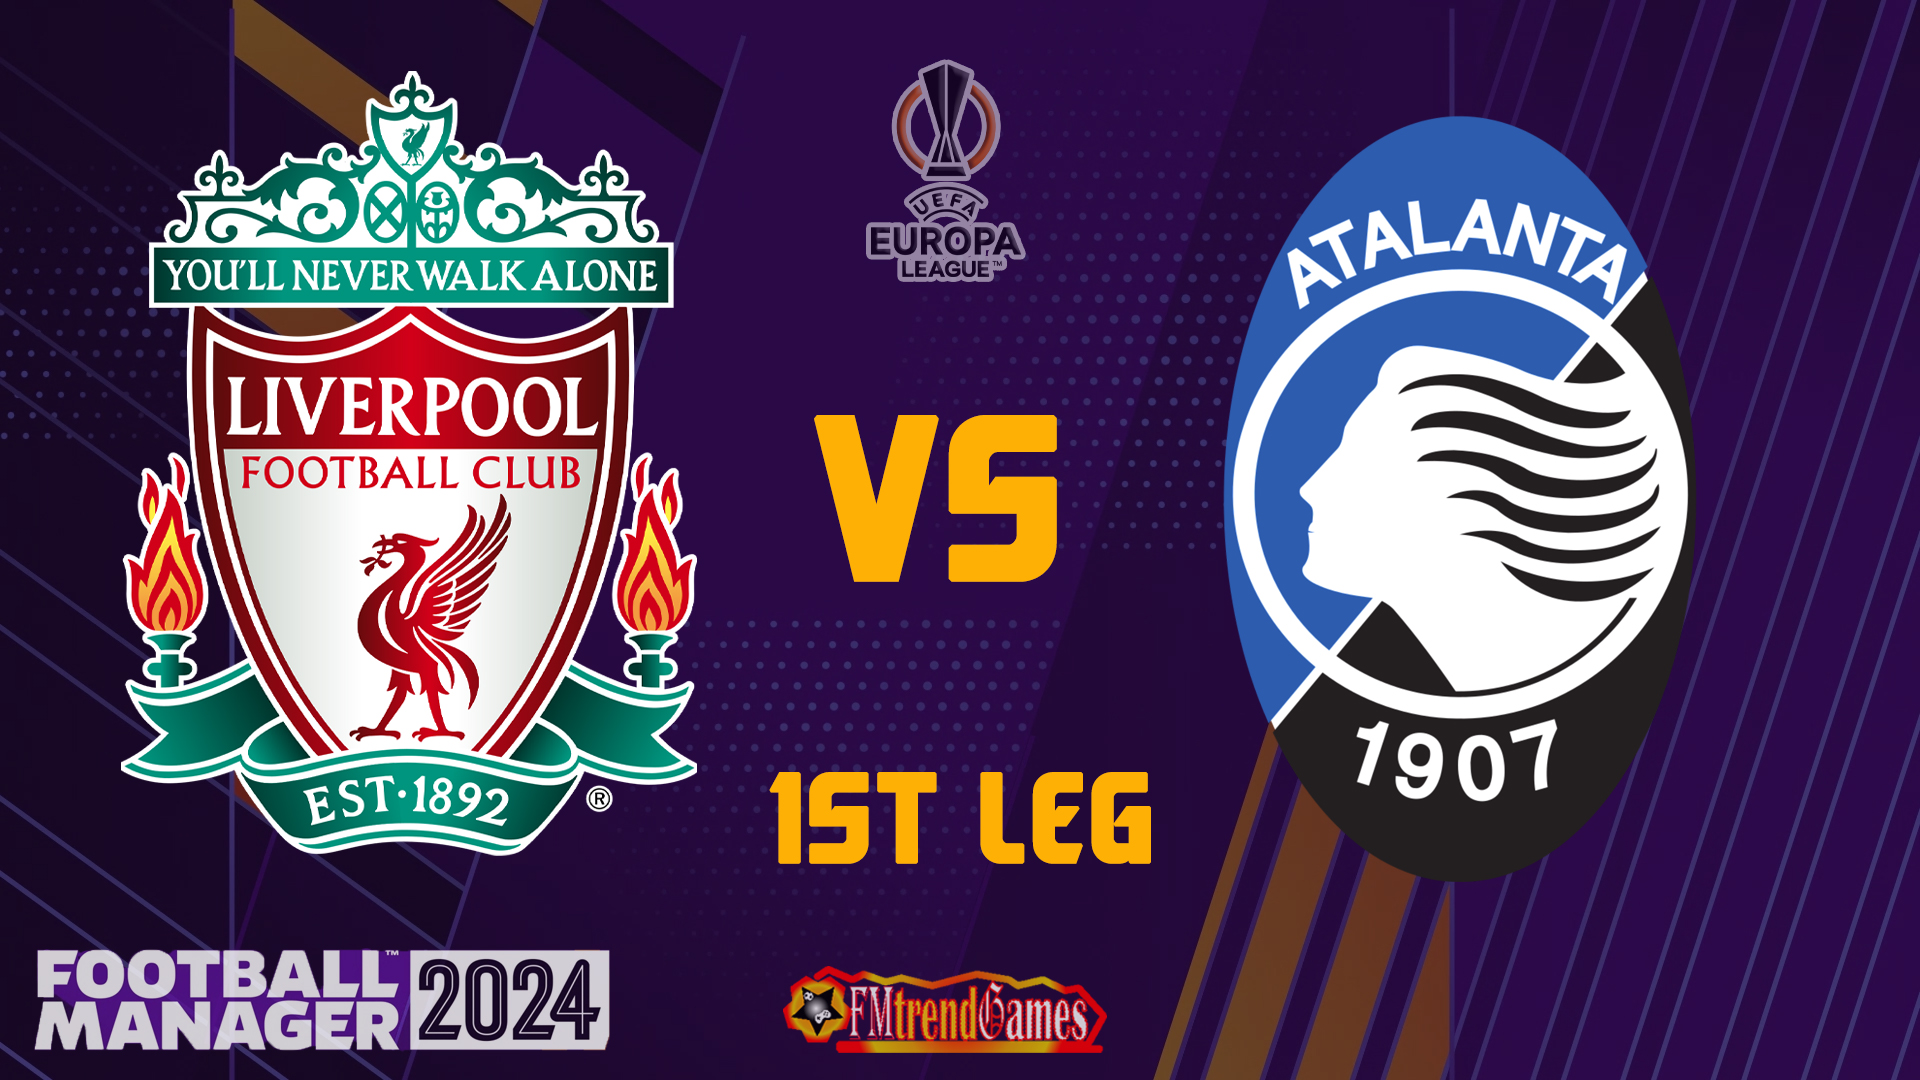 First Leg of Liverpool Tactics against Atalanta